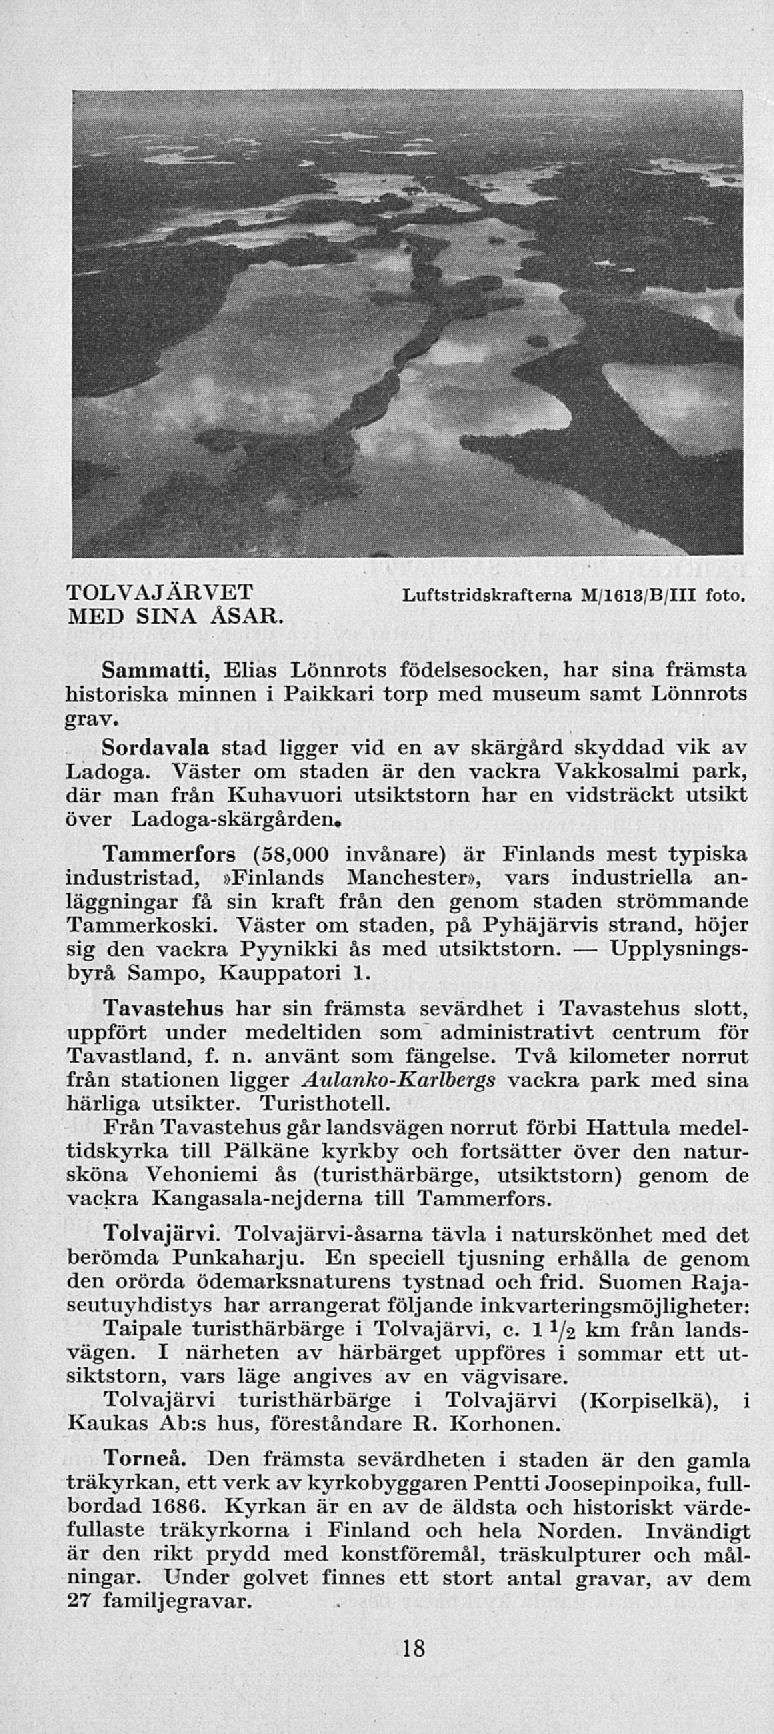 TOLVAJARVET MED SINA ÅSAR Luftstridskrafterna M/1613/B/111 foto. Sammatti, Elias Lönnrots födelsesocken, har sina främsta historiska minnen i Paikkari torp med museum samt Lönnrots grav.